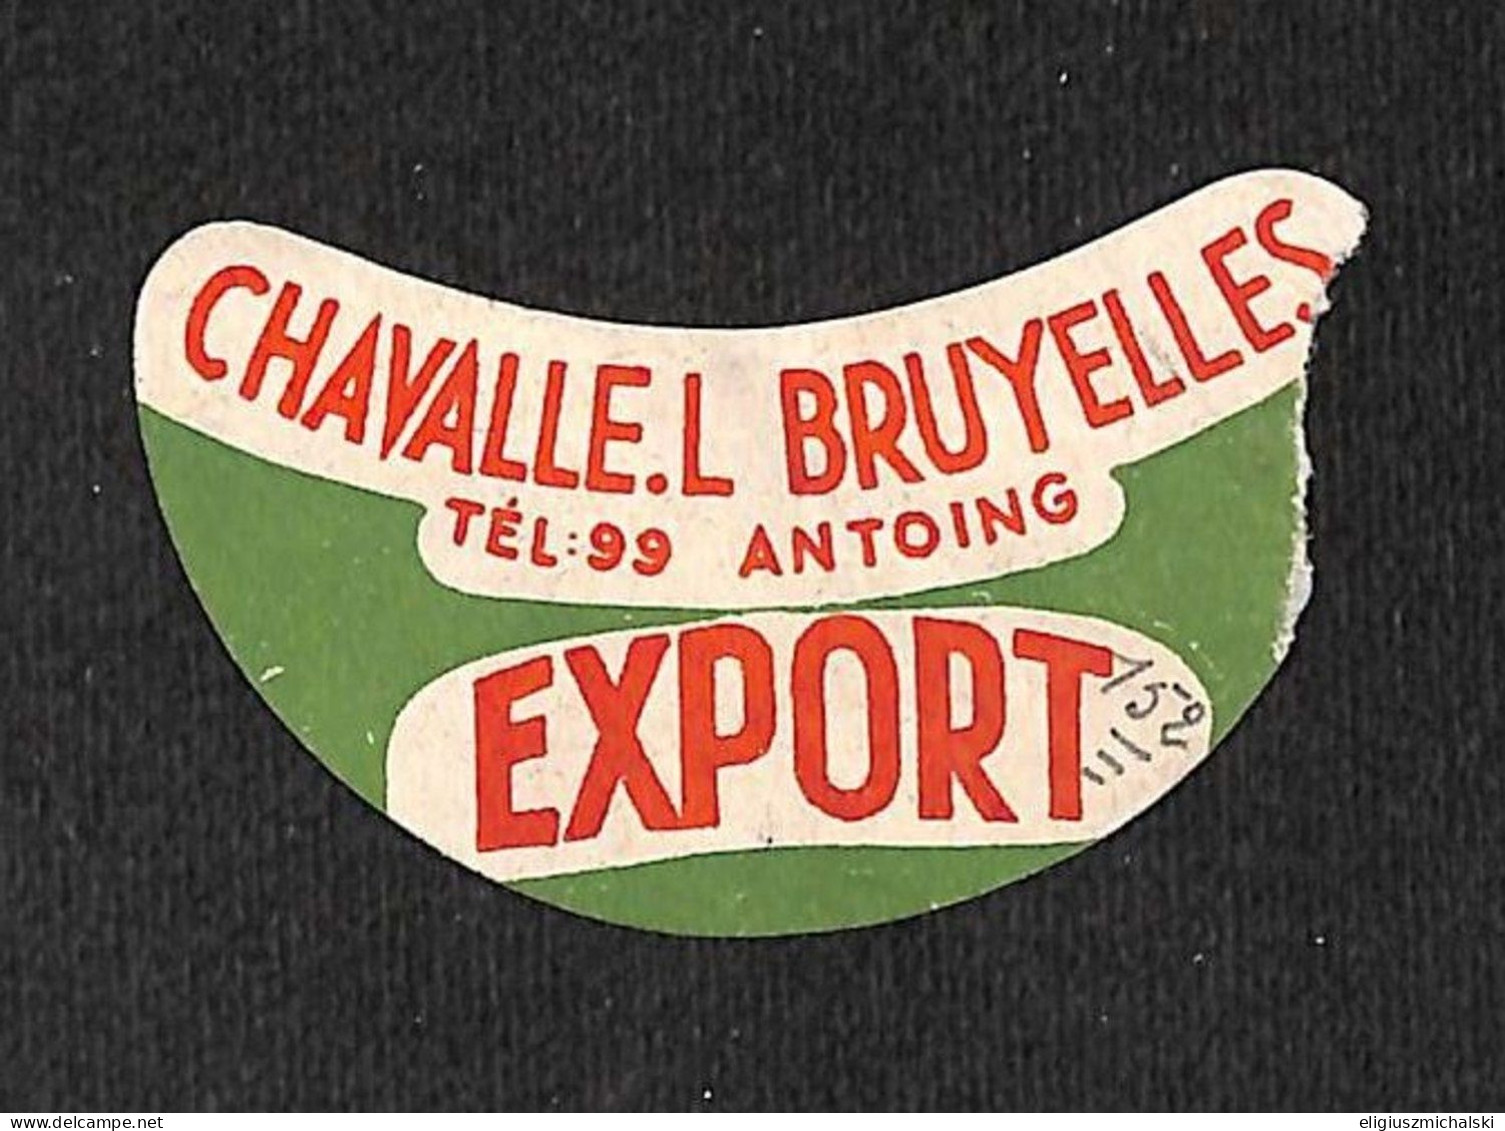 Antoing - Chavalle L. Bruyelles Export Découpe !!! (vente Unique) - Bière